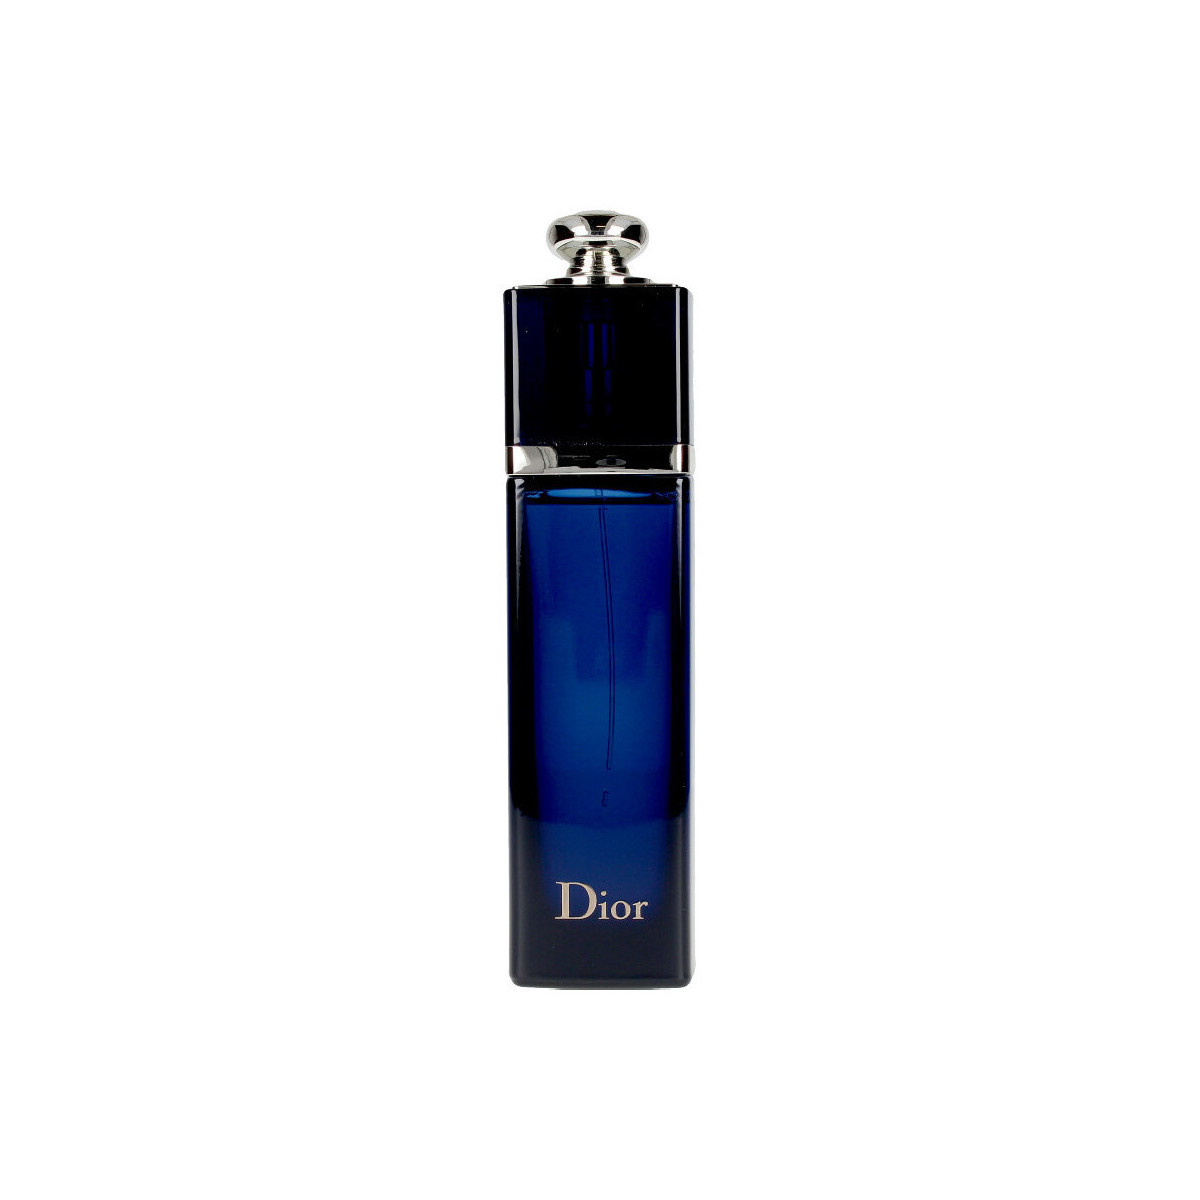 Belleza Mujer Perfume Dior Addict Eau De Parfum Vaporizador 